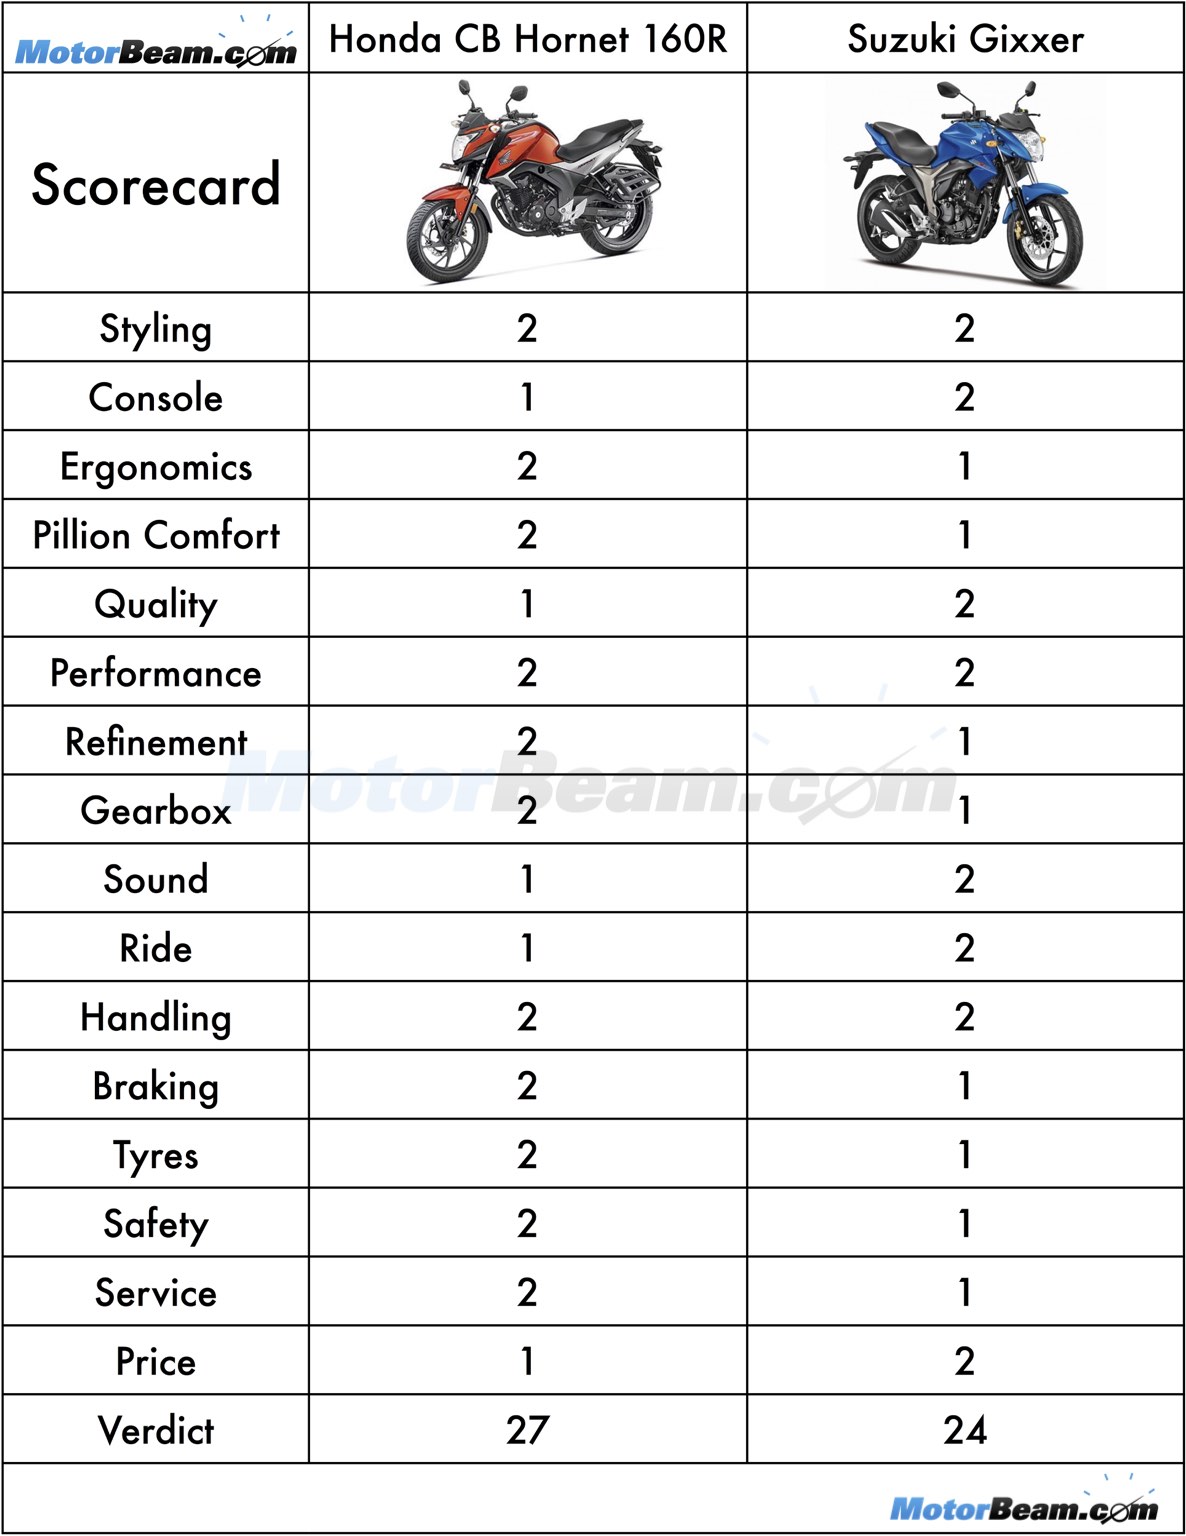 Honda CB Hornet 160R vs Suzuki Gixxer Scorecard